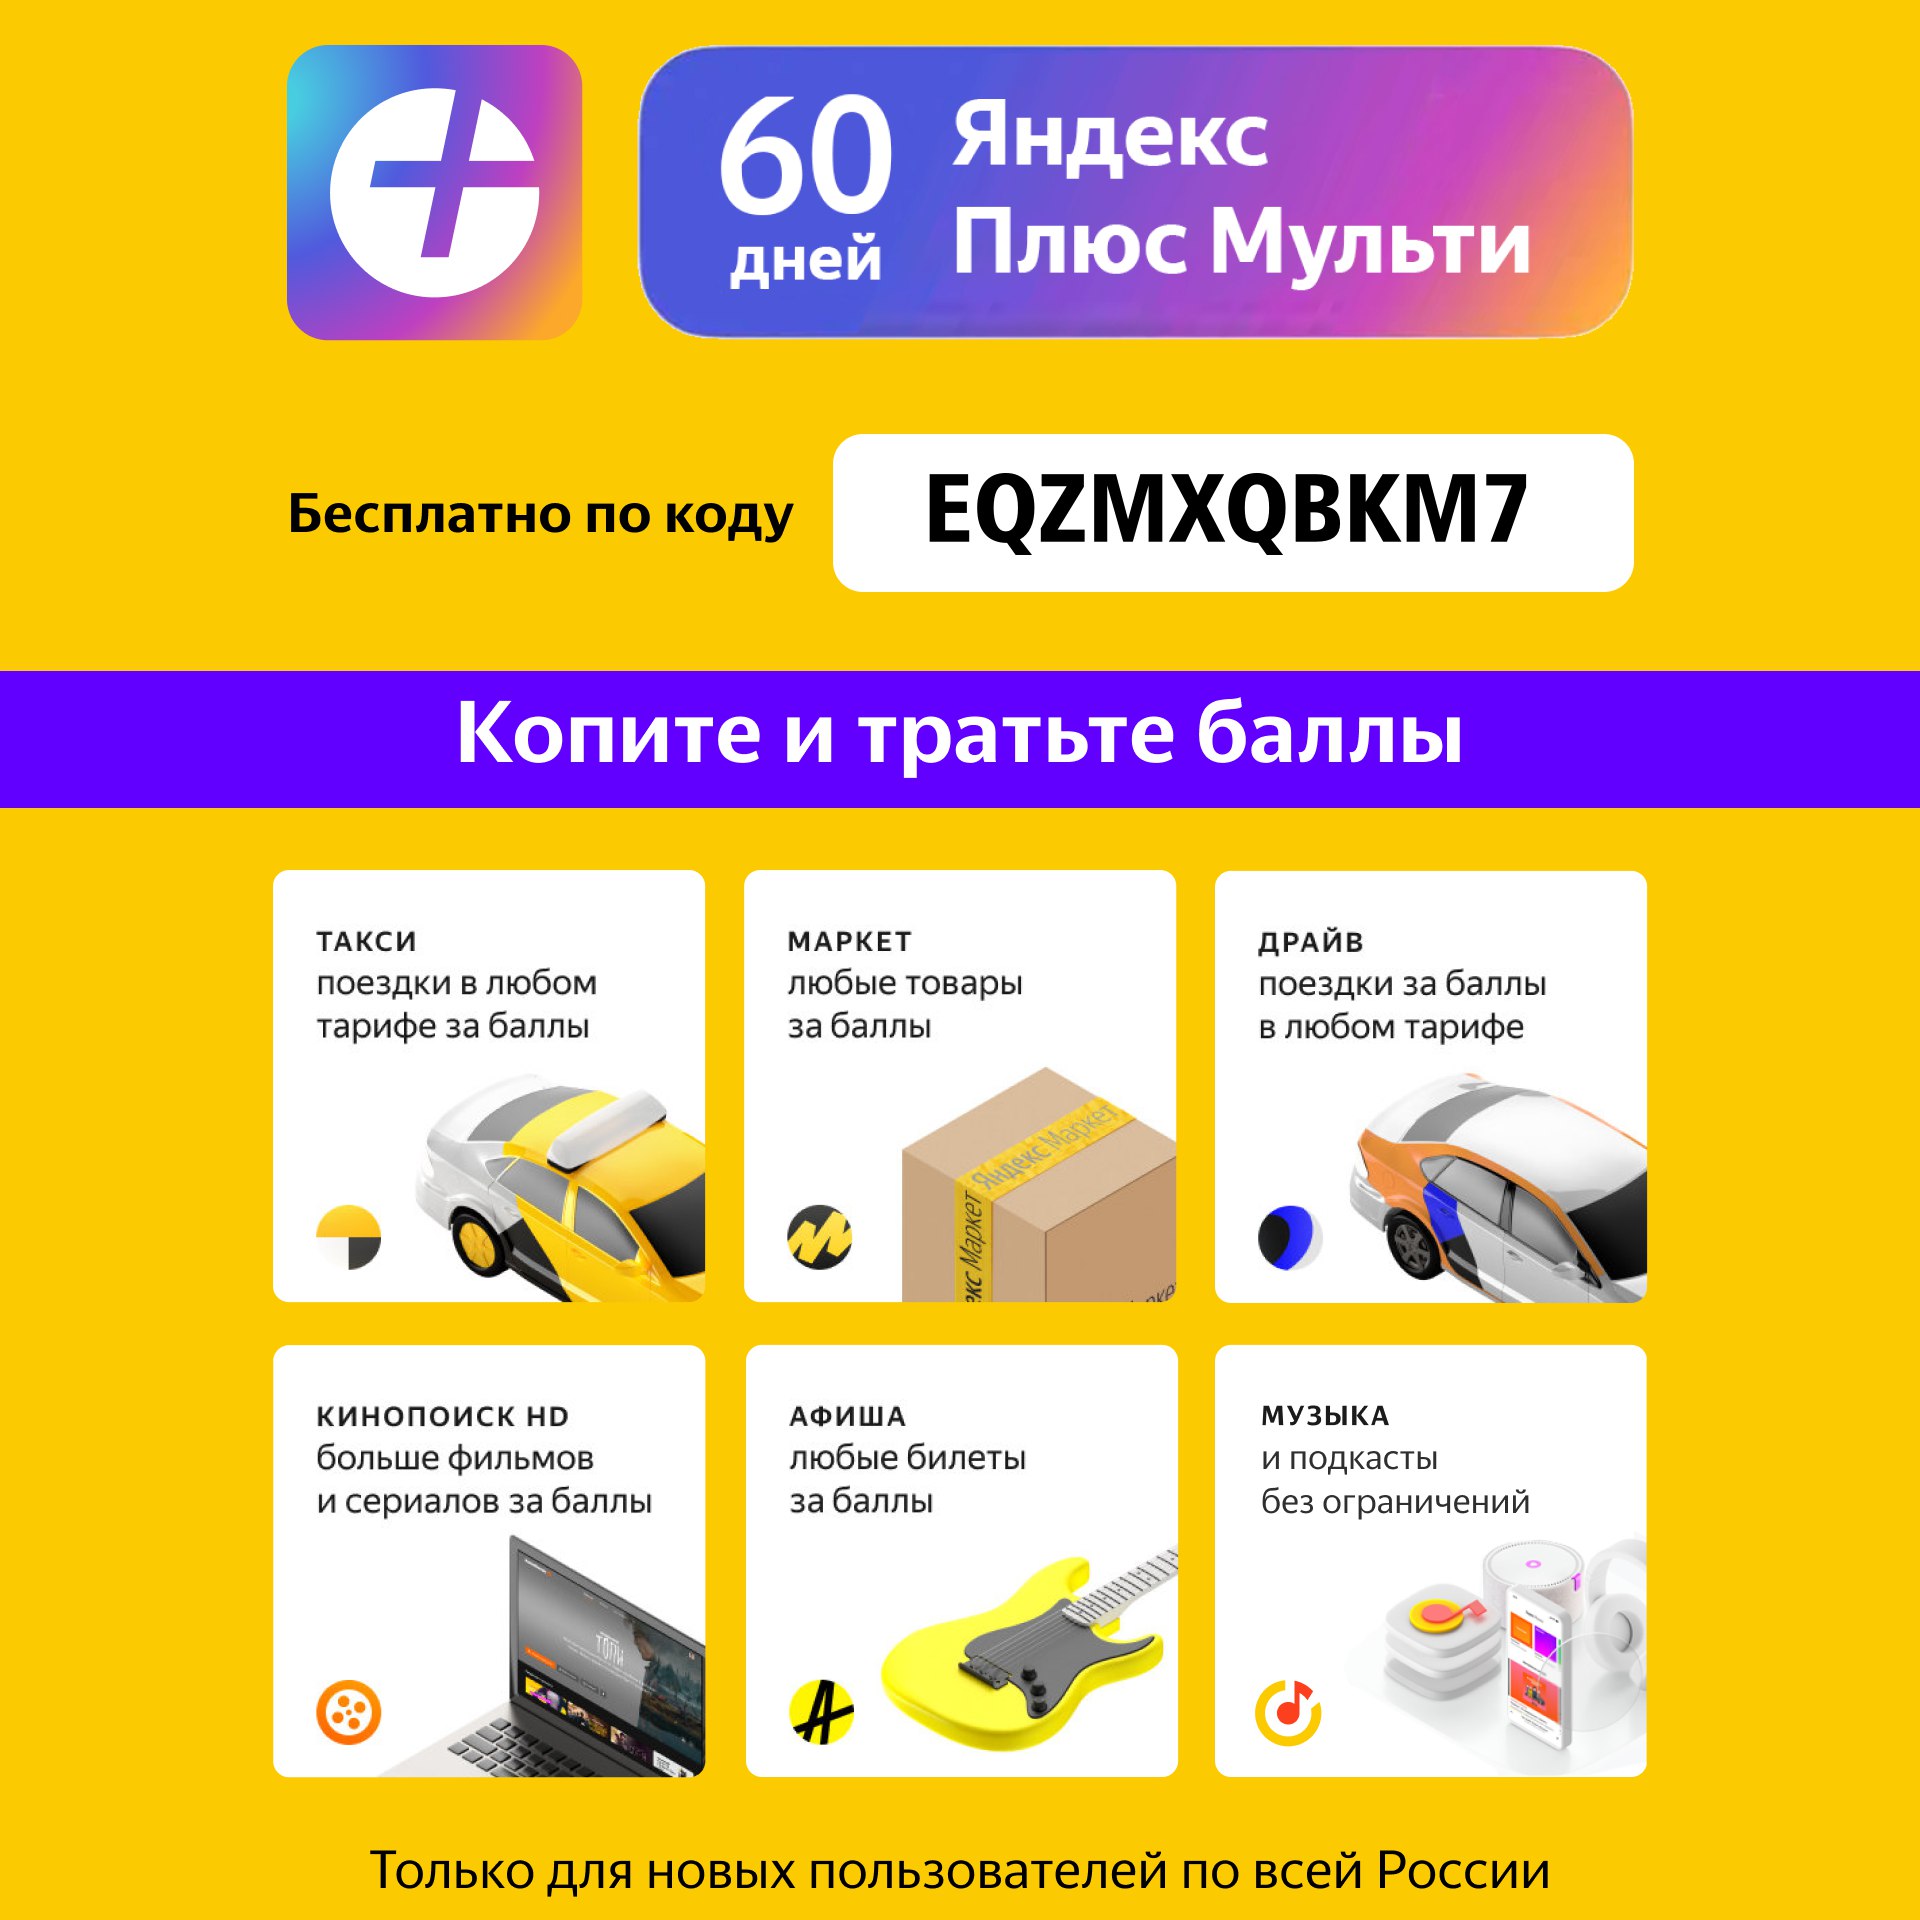 Яндекс подписка купить телеграмм фото 115